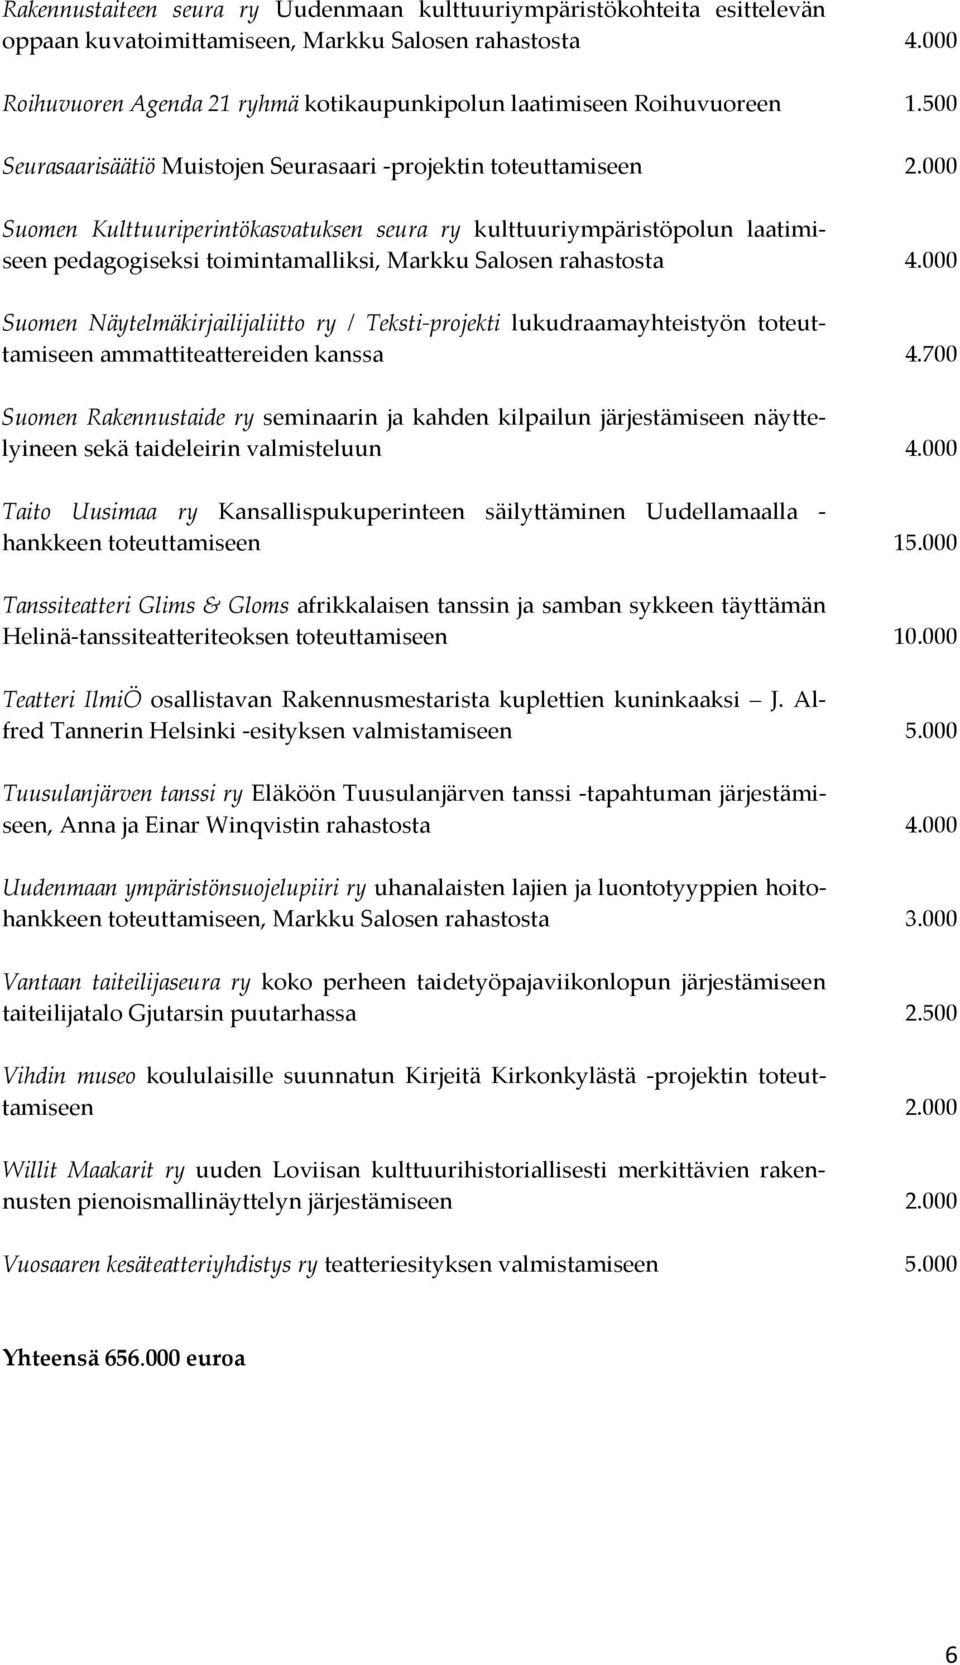 000 Suomen Kulttuuriperintökasvatuksen seura ry kulttuuriympäristöpolun laatimiseen pedagogiseksi toimintamalliksi, Markku Salosen rahastosta 4.